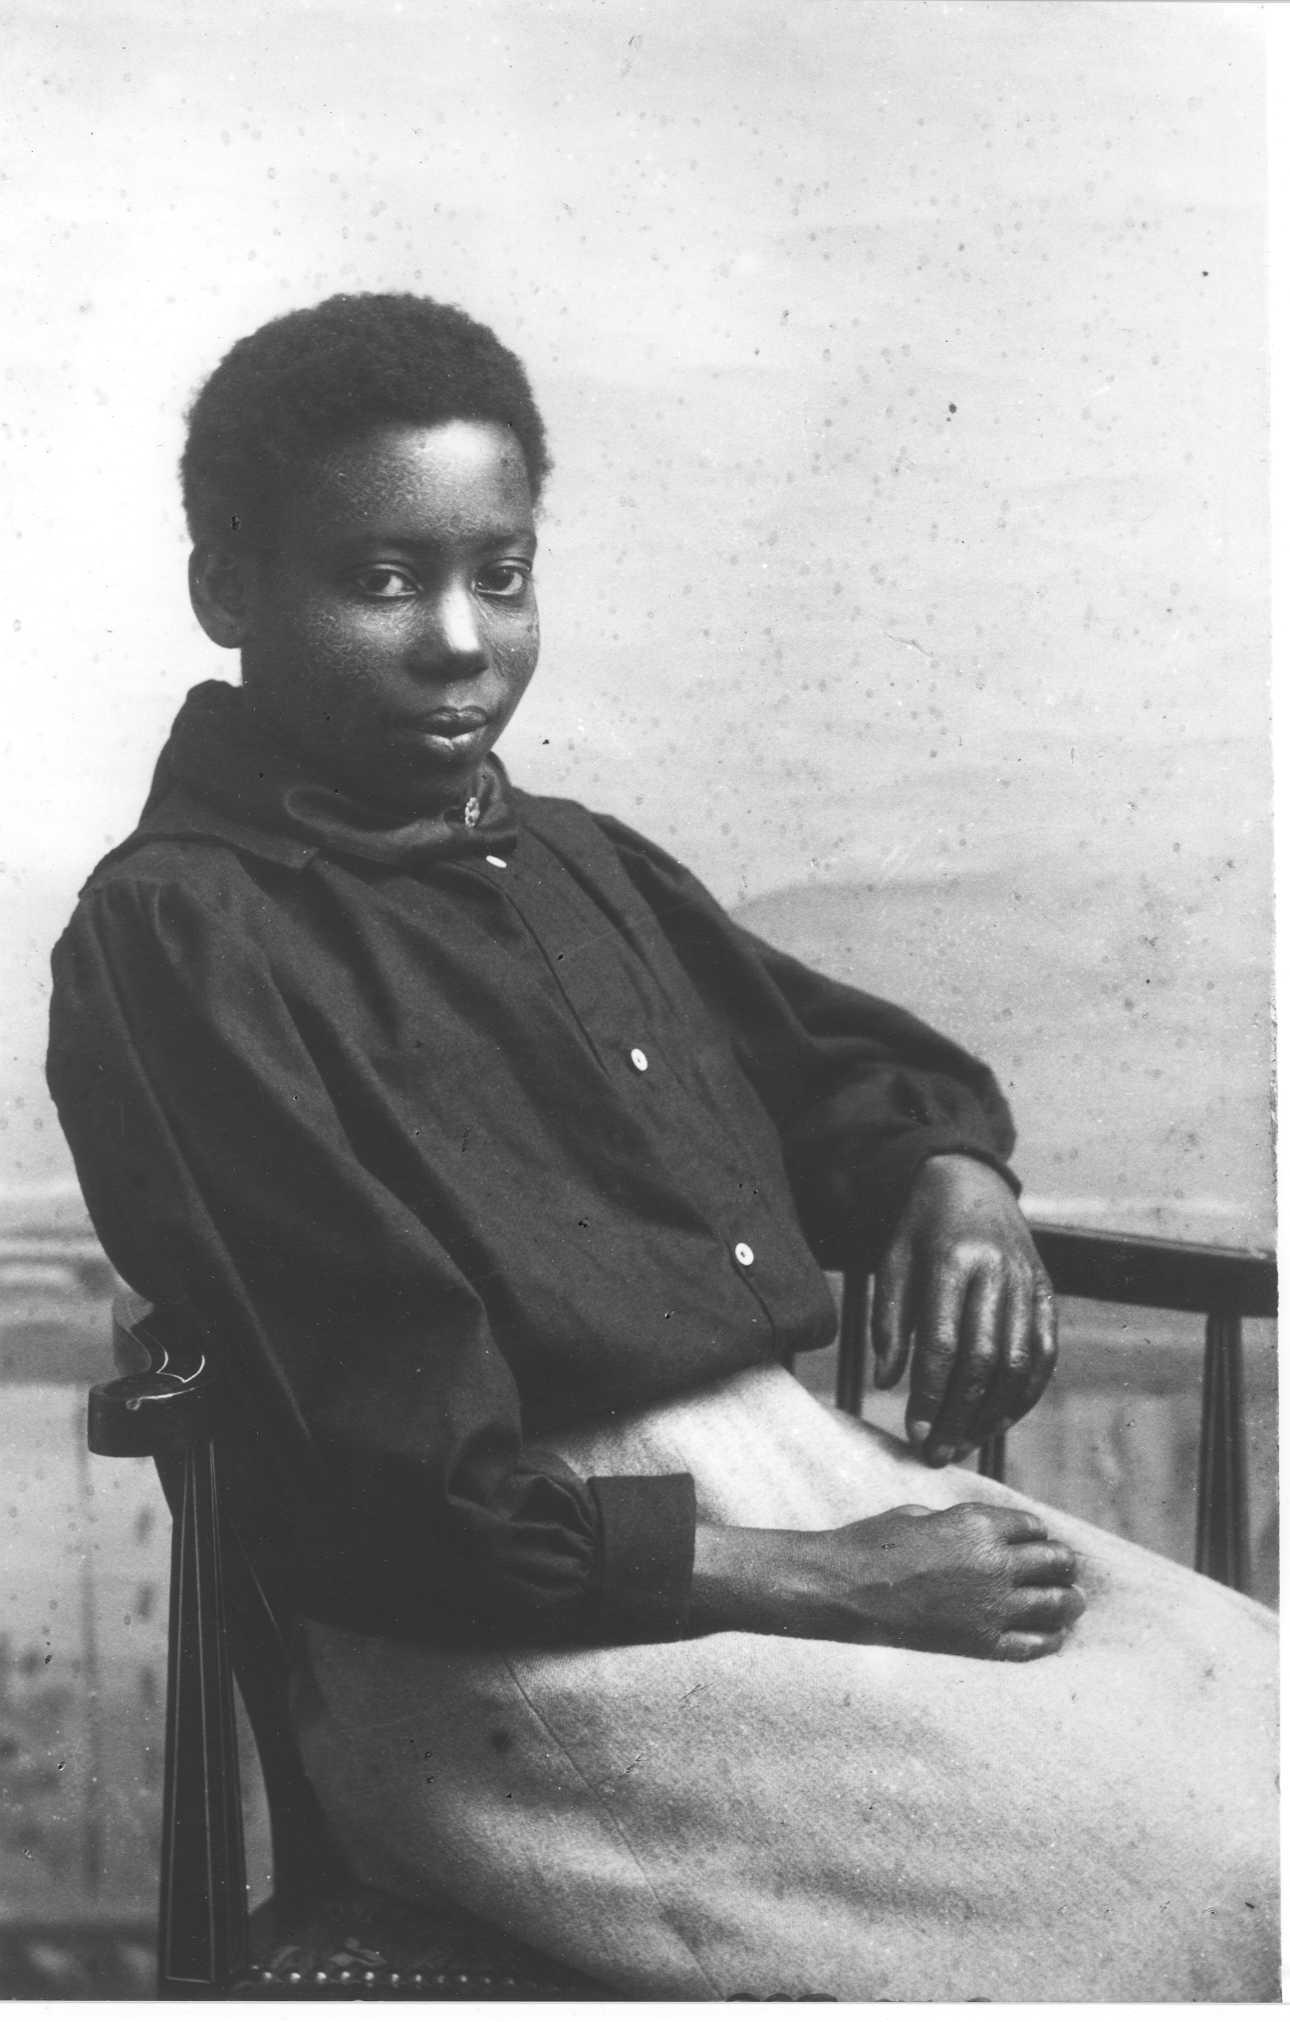 Asarto Ward in c.1899 living in Tottenham, born in Sierra Leone